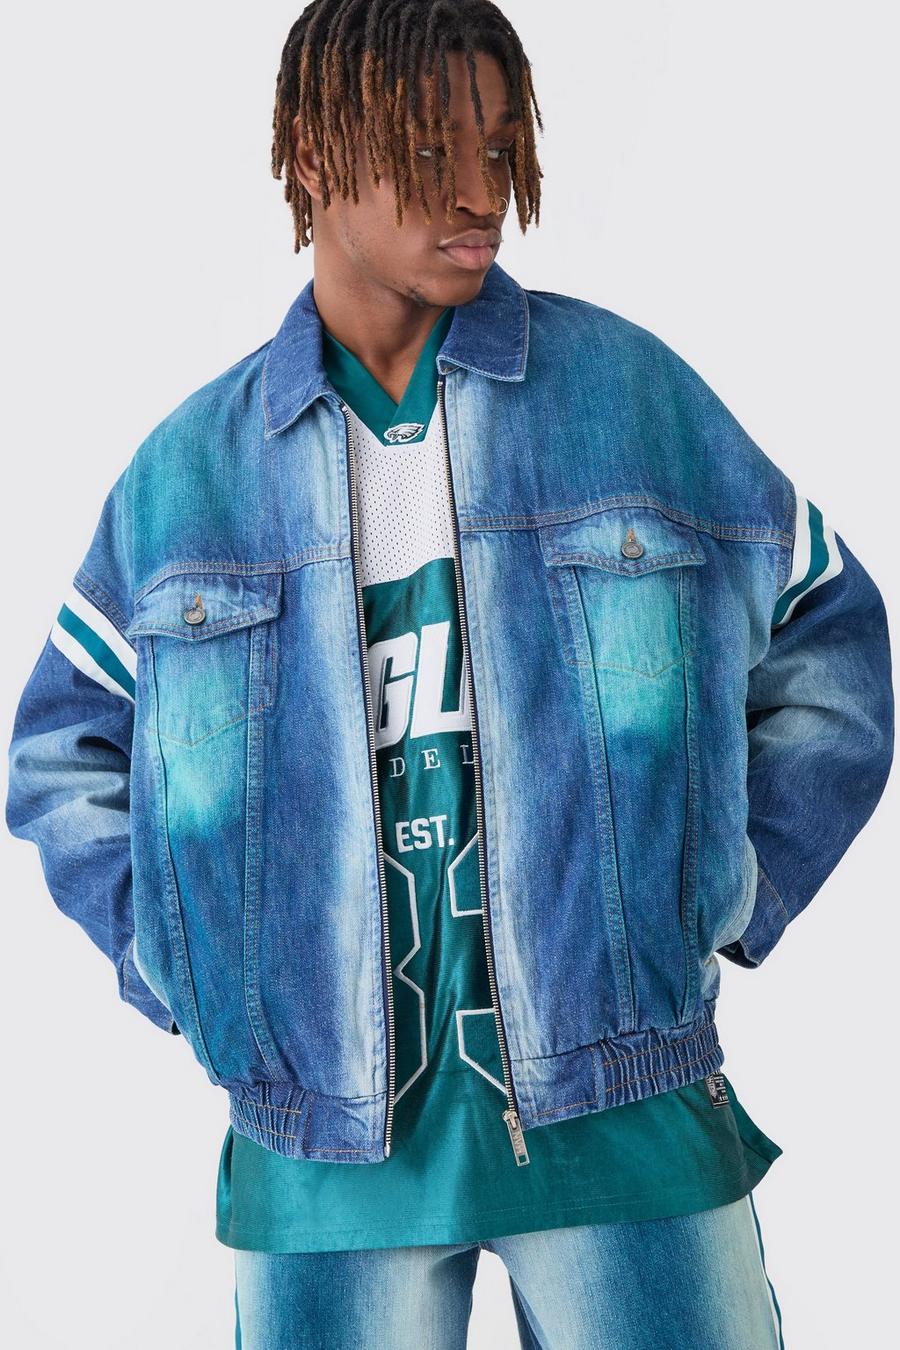 Giacca in denim oversize NFL Eagles con applique e zip colorata, Antique blue